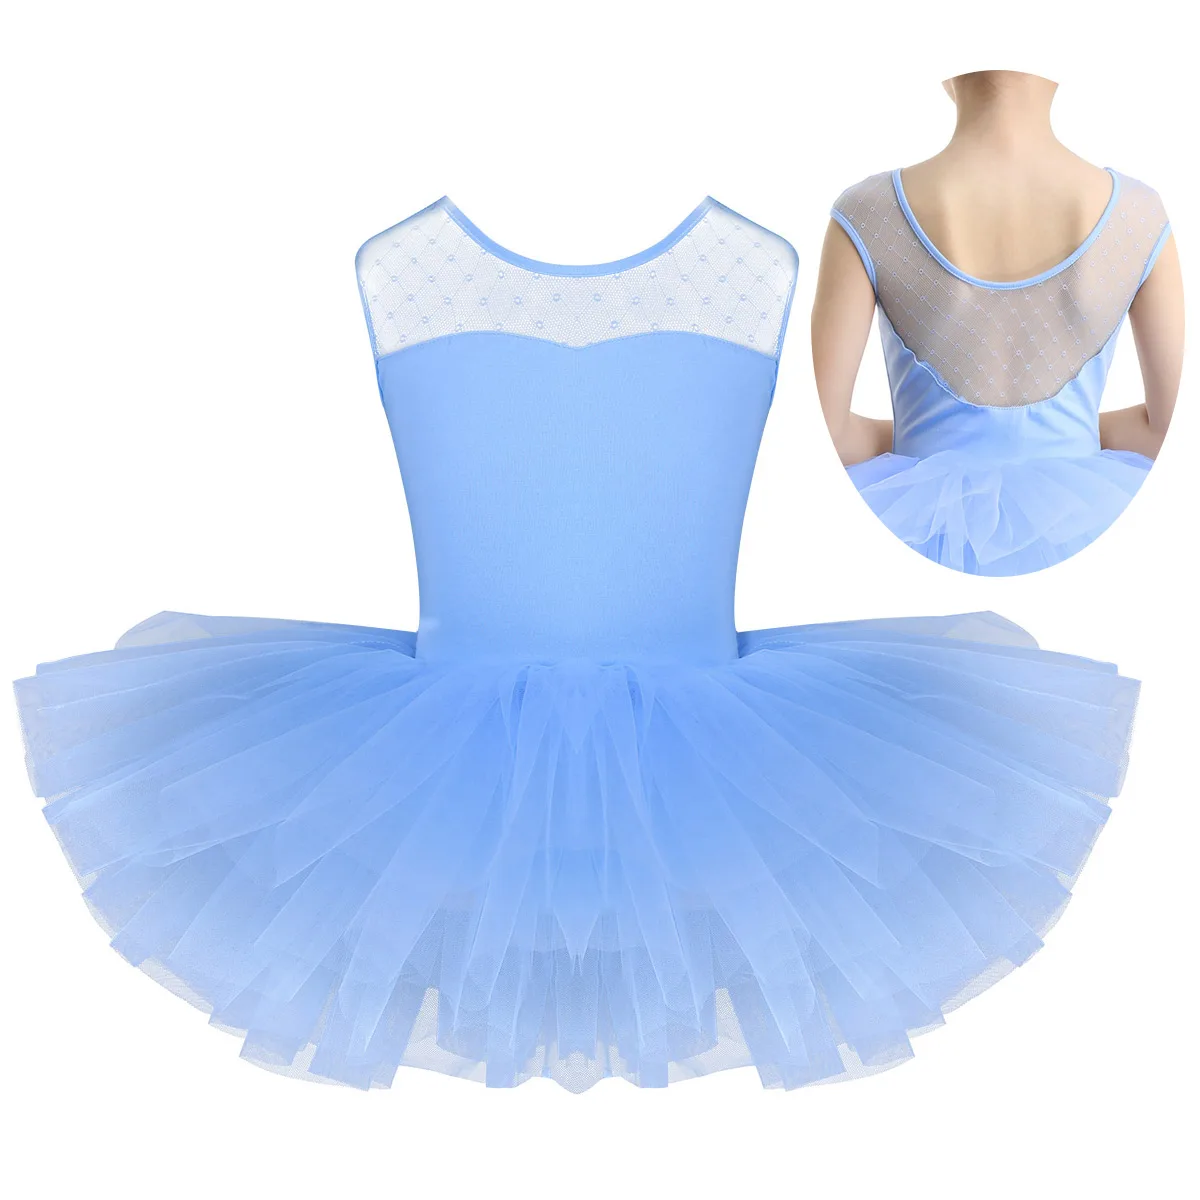 

Детское балетное платье-пачка, гимнастическое трико, сетчатый тюль без рукавов для девочек, костюмы для лебедей и озер, балетные костюмы, пл...